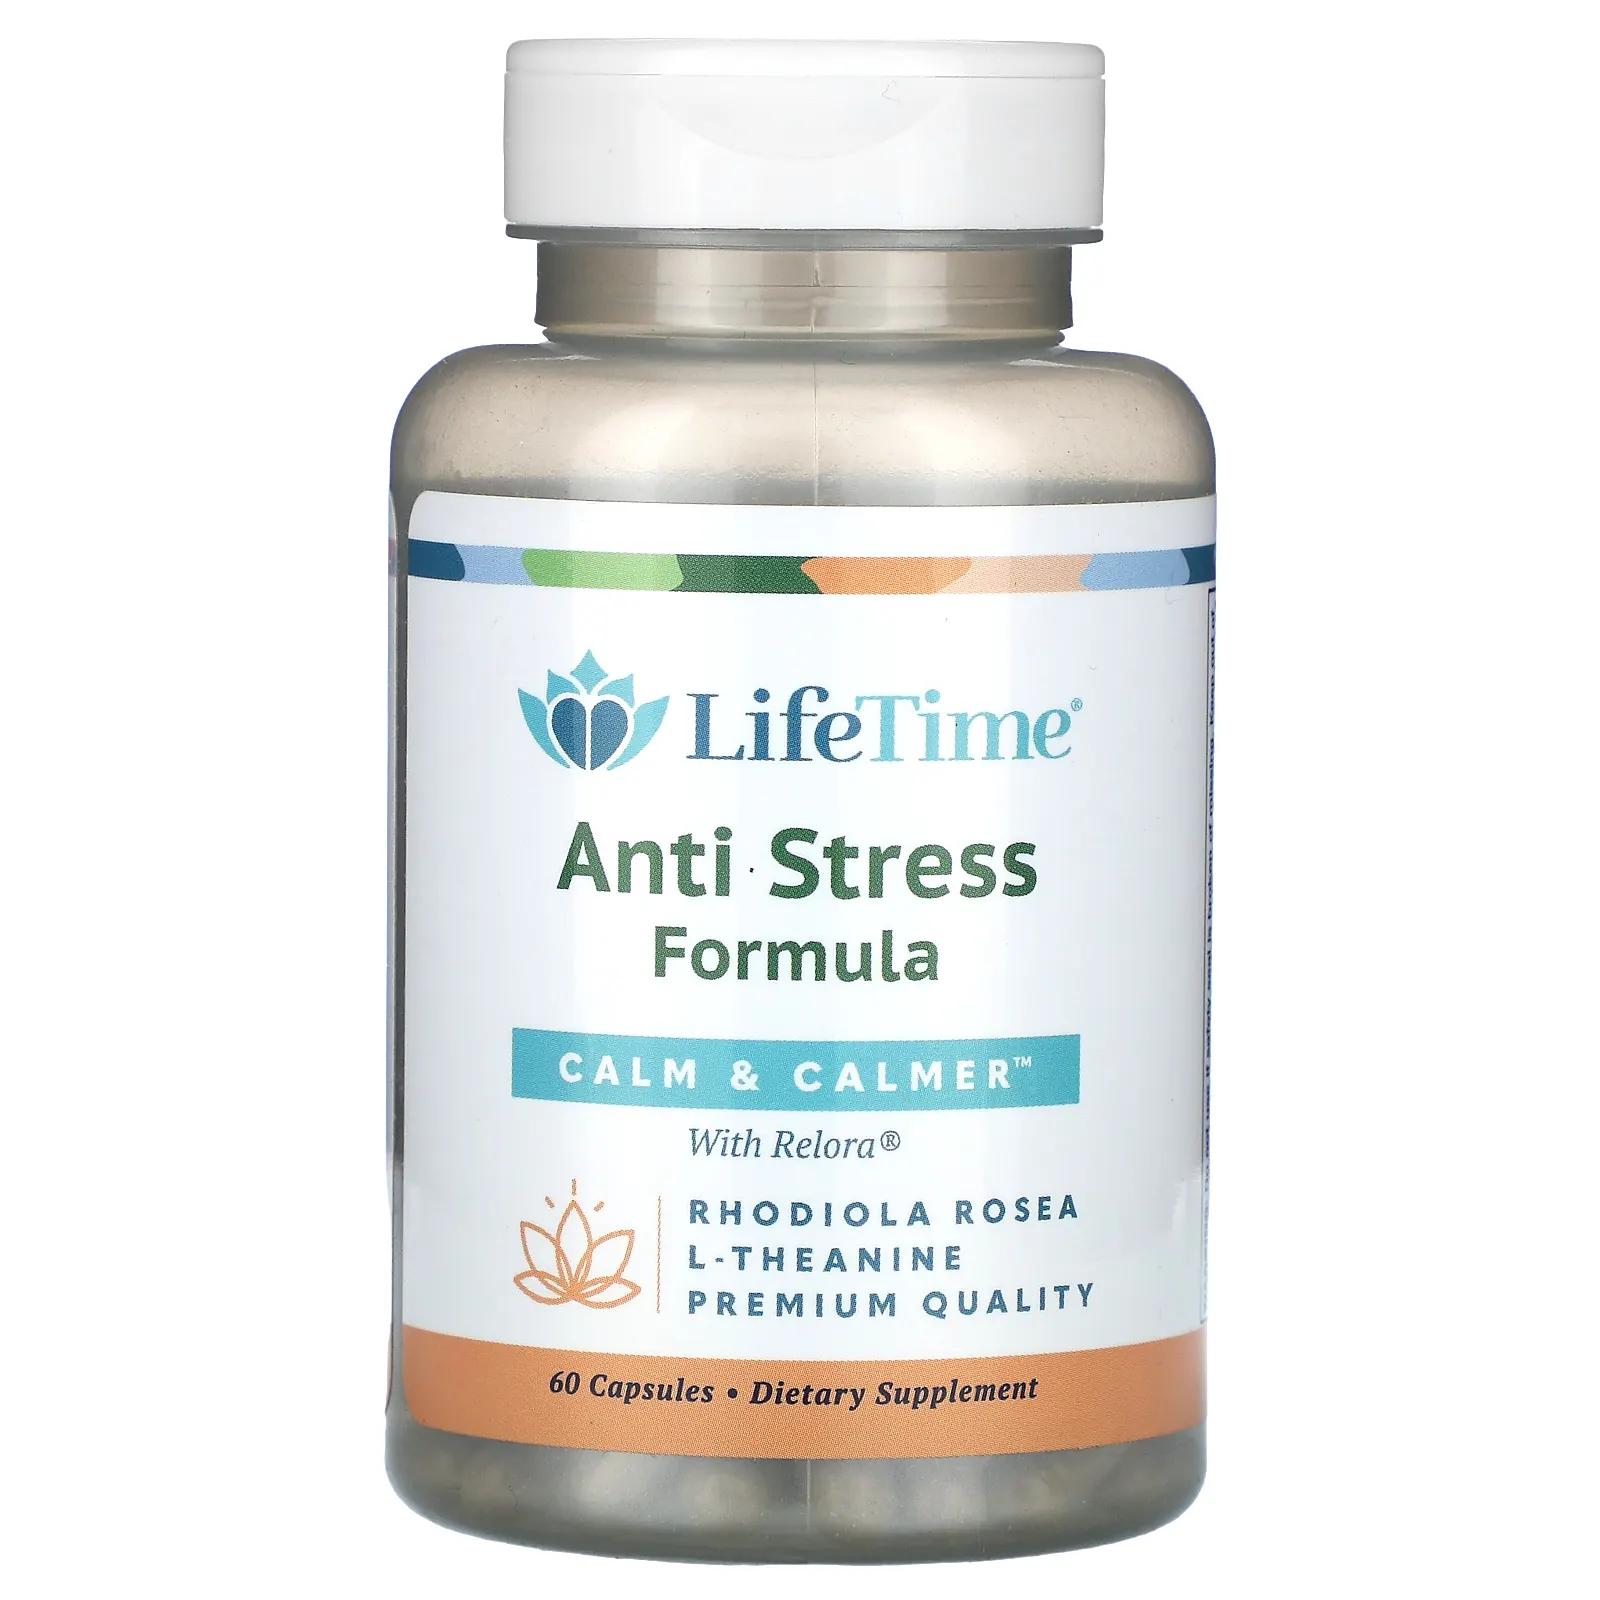 LifeTime Vitamins Успокаивающая антистрессовая формула 60 капсул lifetime витамины успокаивают и успокаивают с relora 60 капсул lifetime vitamins